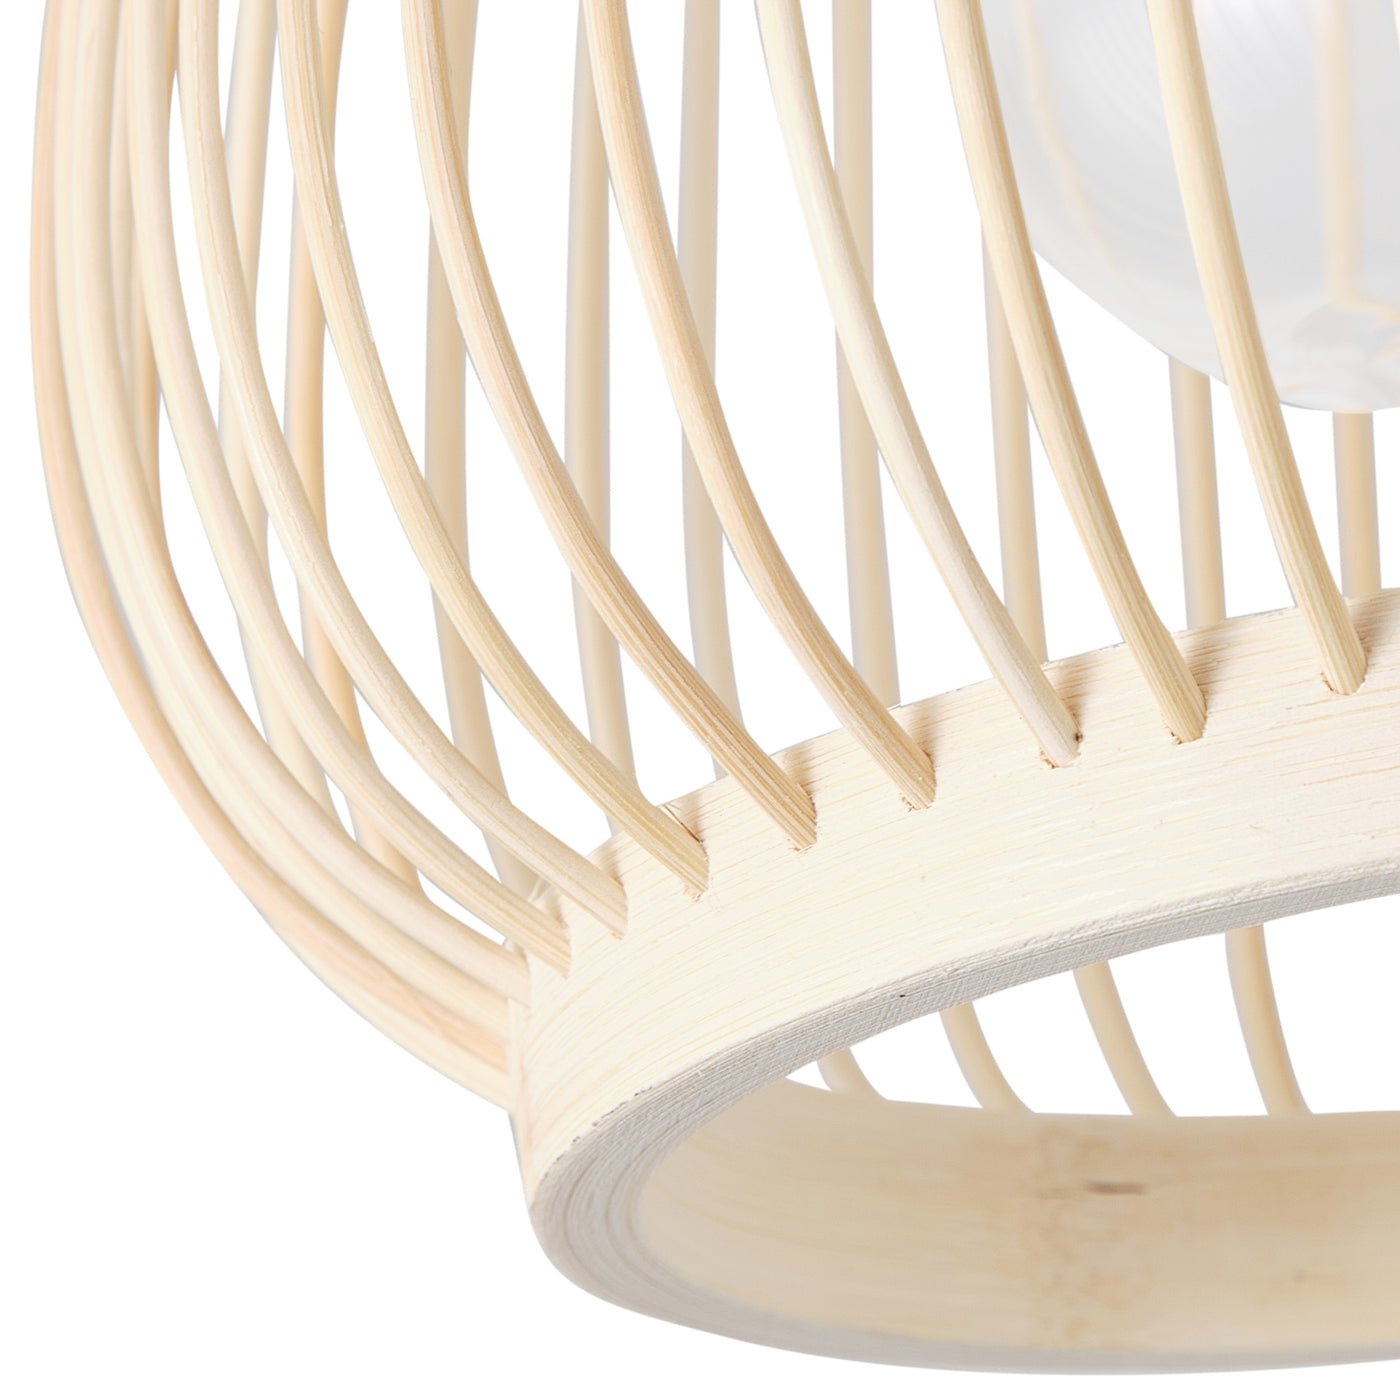 1-Light Bamboo Weaving Openwork Design Flush Mount Lighting